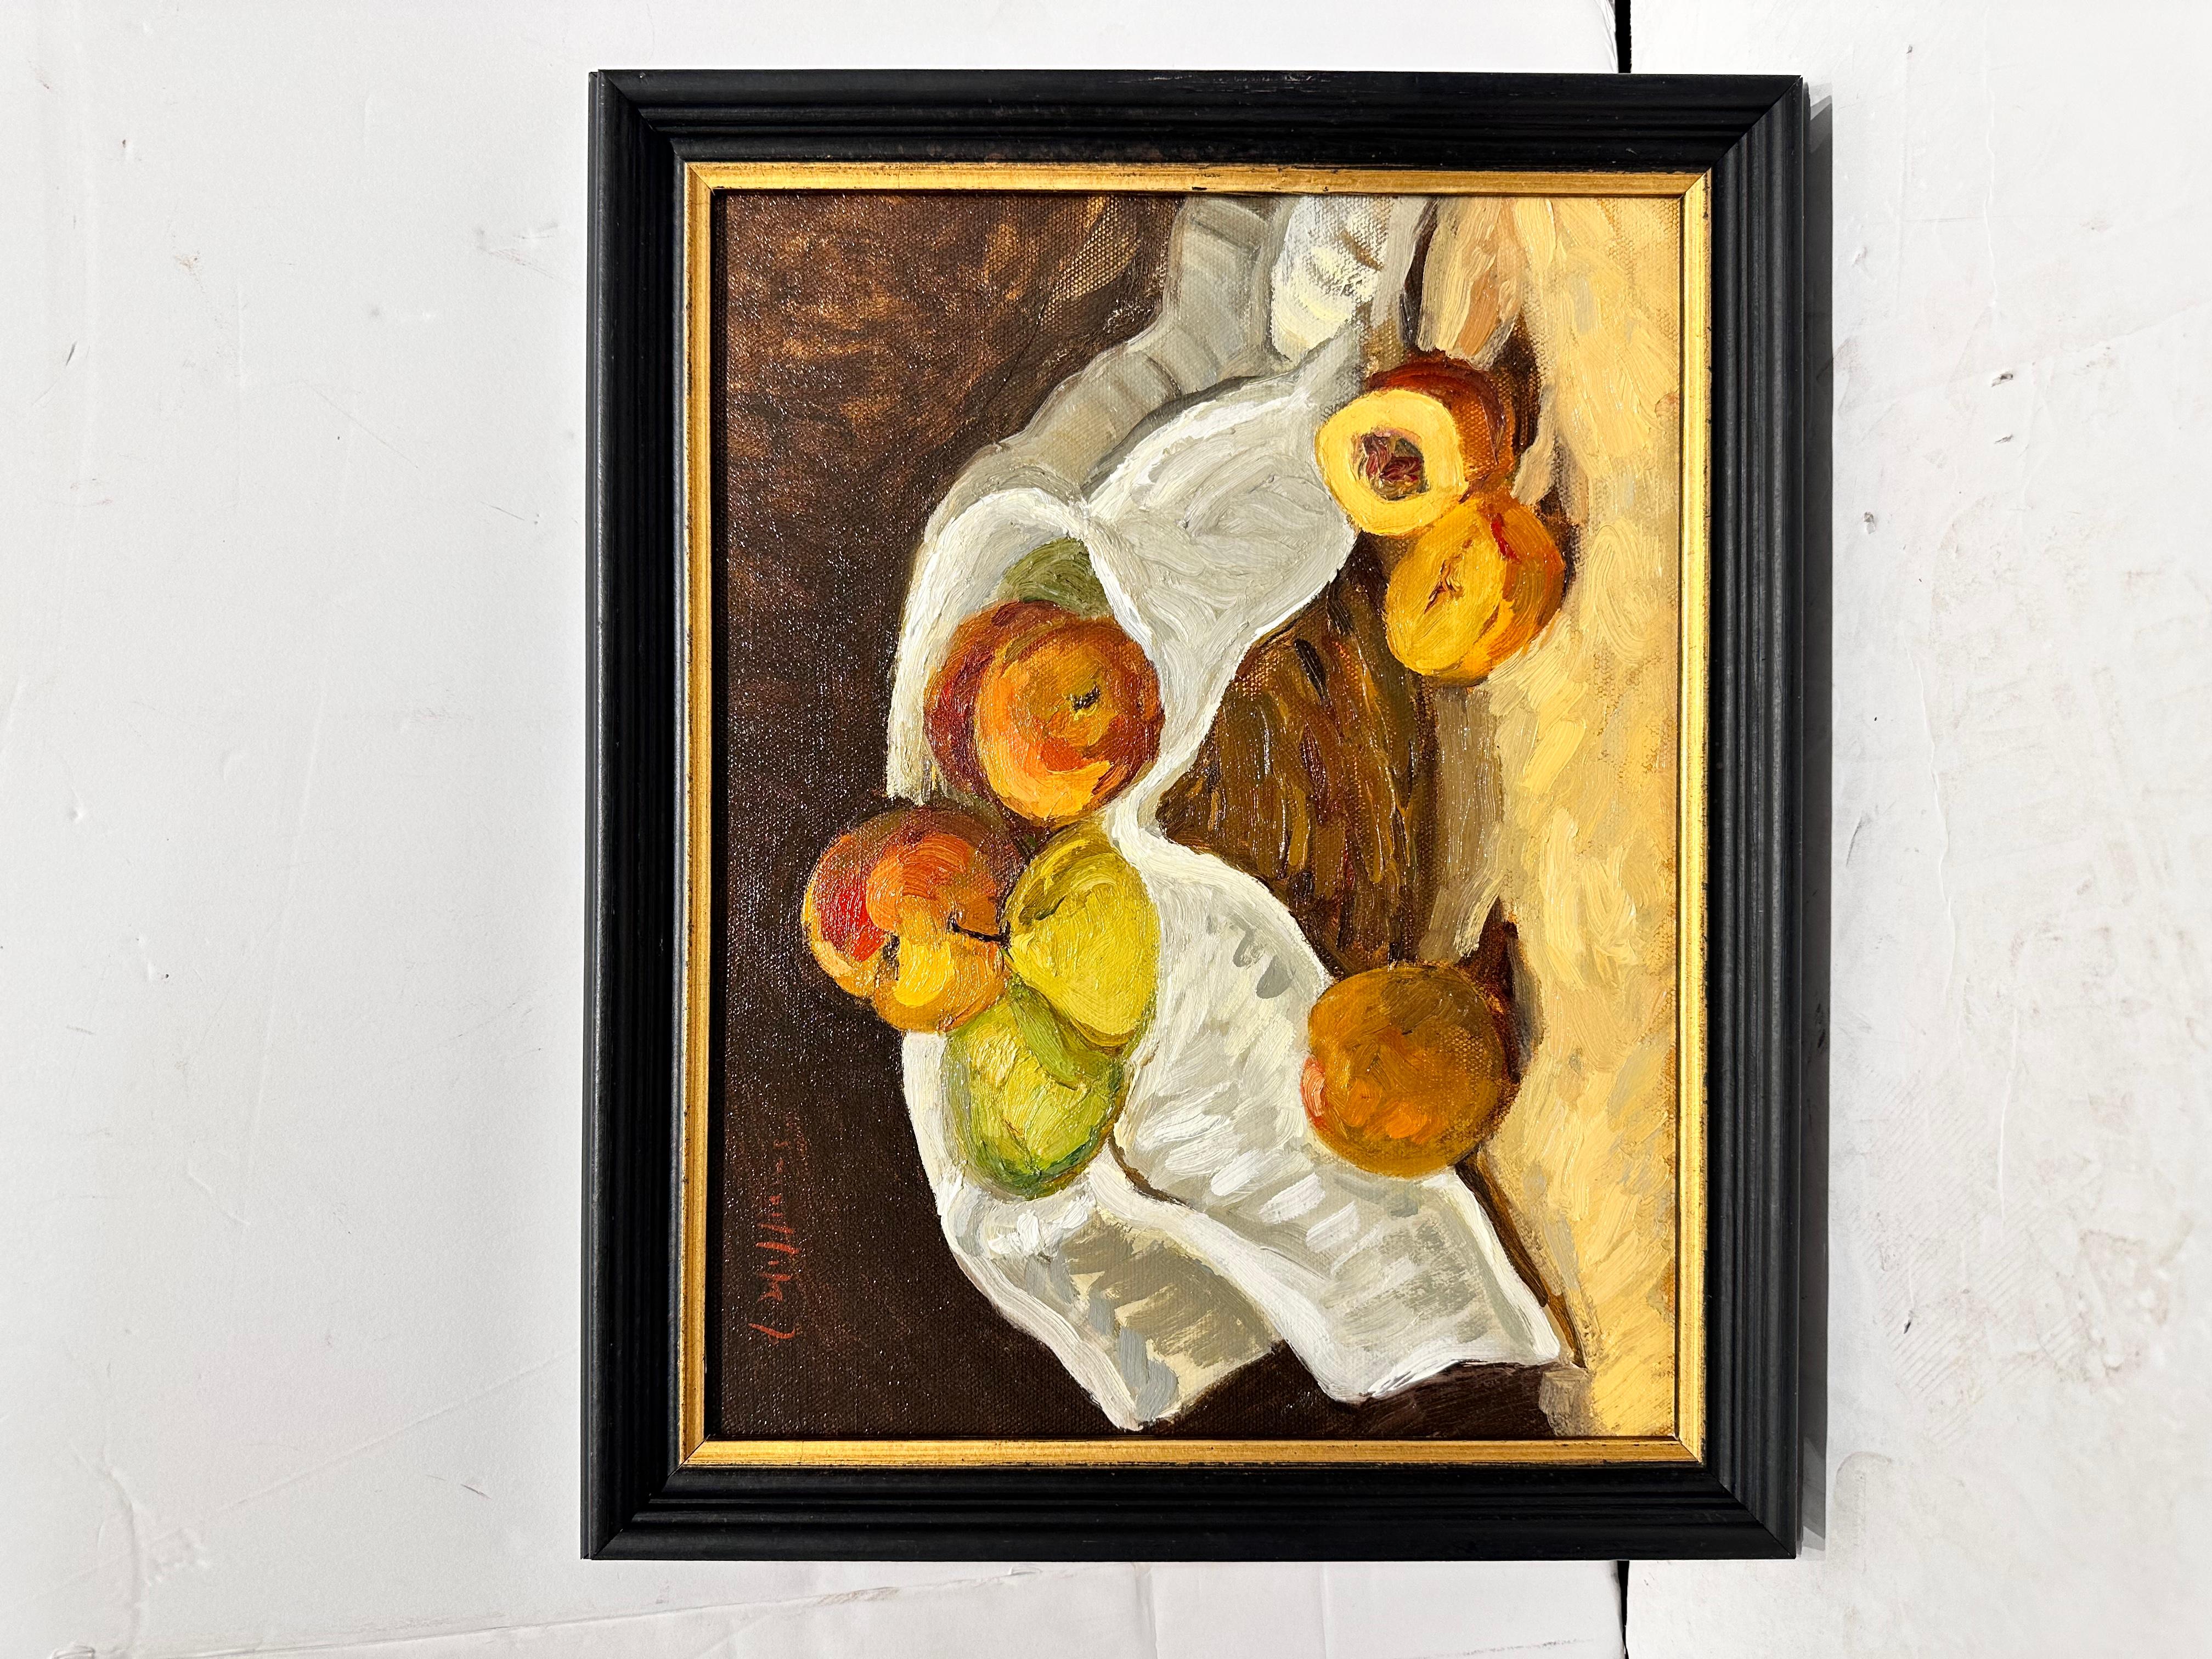 Quoi de plus approprié pour une belle peinture à l'huile que la traditionnelle corbeille de fruits ? Cette pièce égayera votre espace grâce à l'attention portée par l'artiste aux détails et à ses pêches et poires aux couleurs vives !